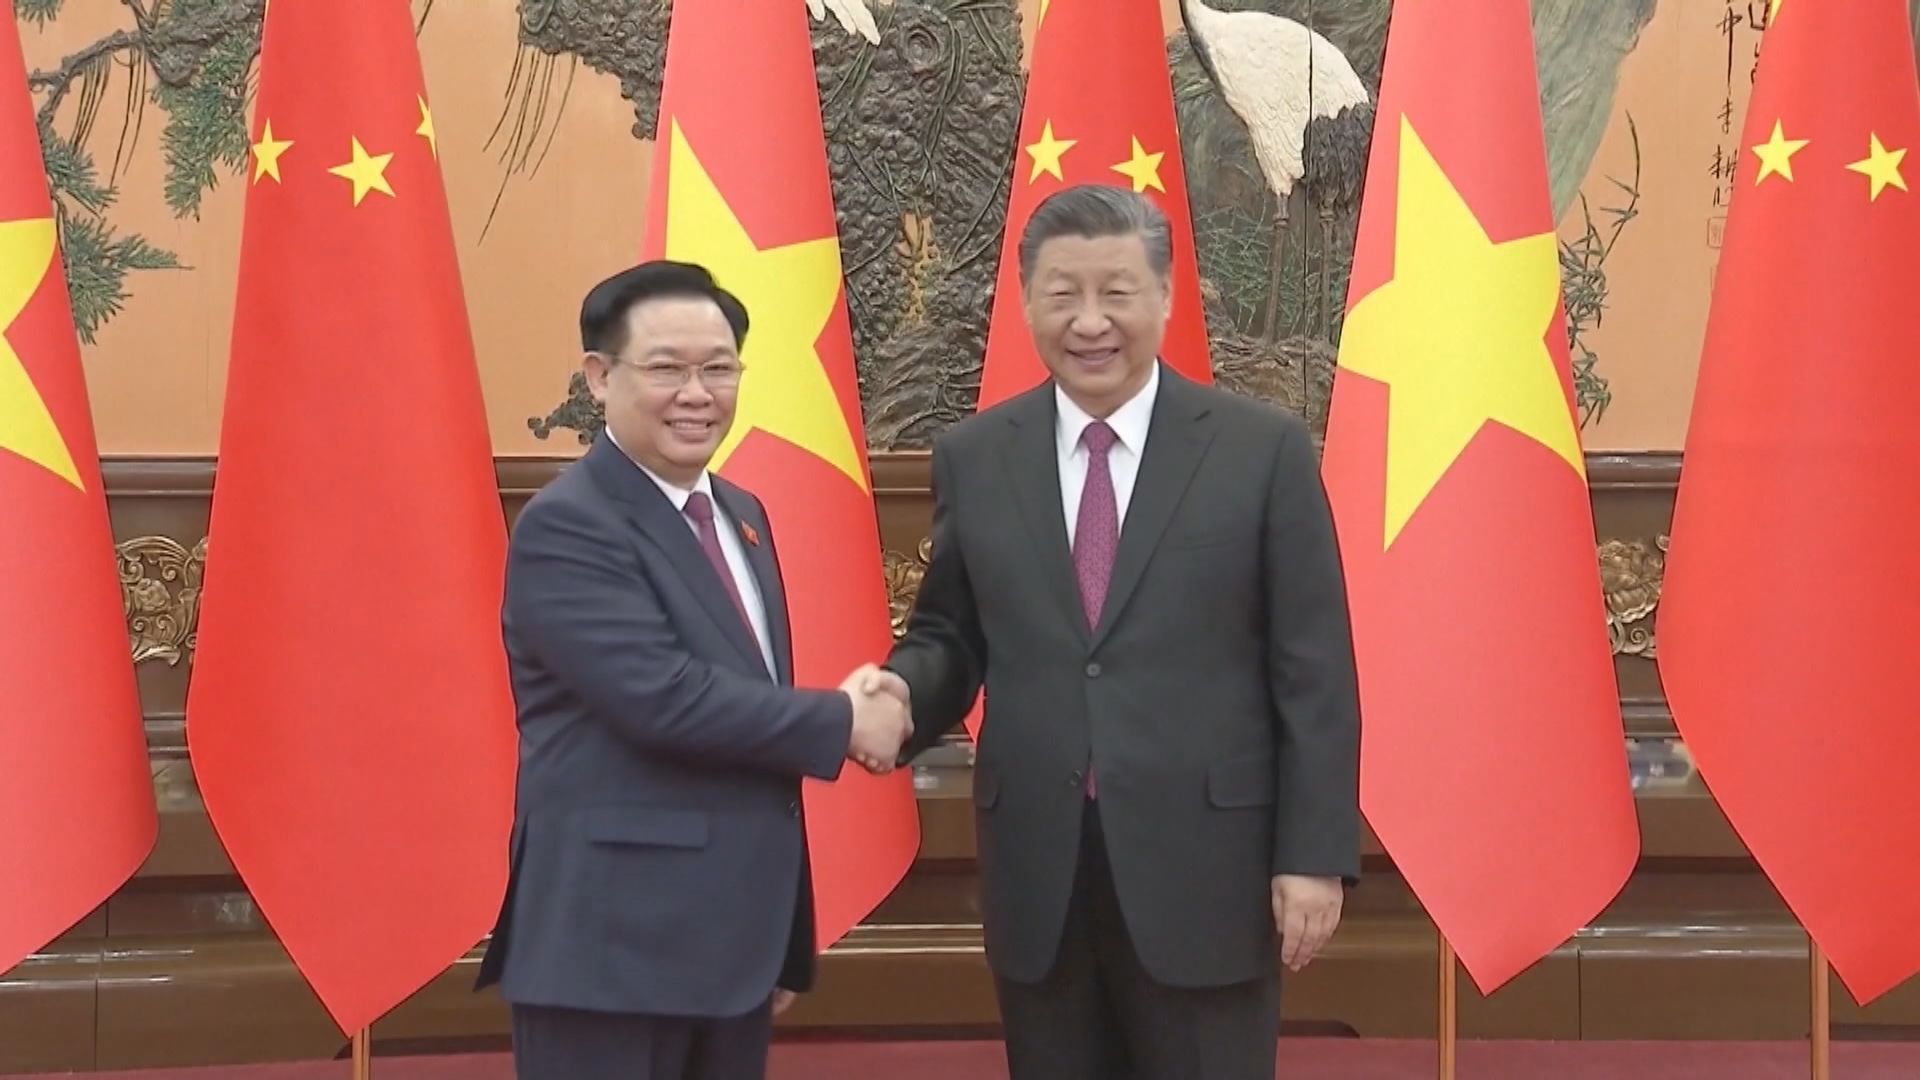 習近平晤越南國會主席王庭惠 指捍衛社會主義制度是兩國共同利益